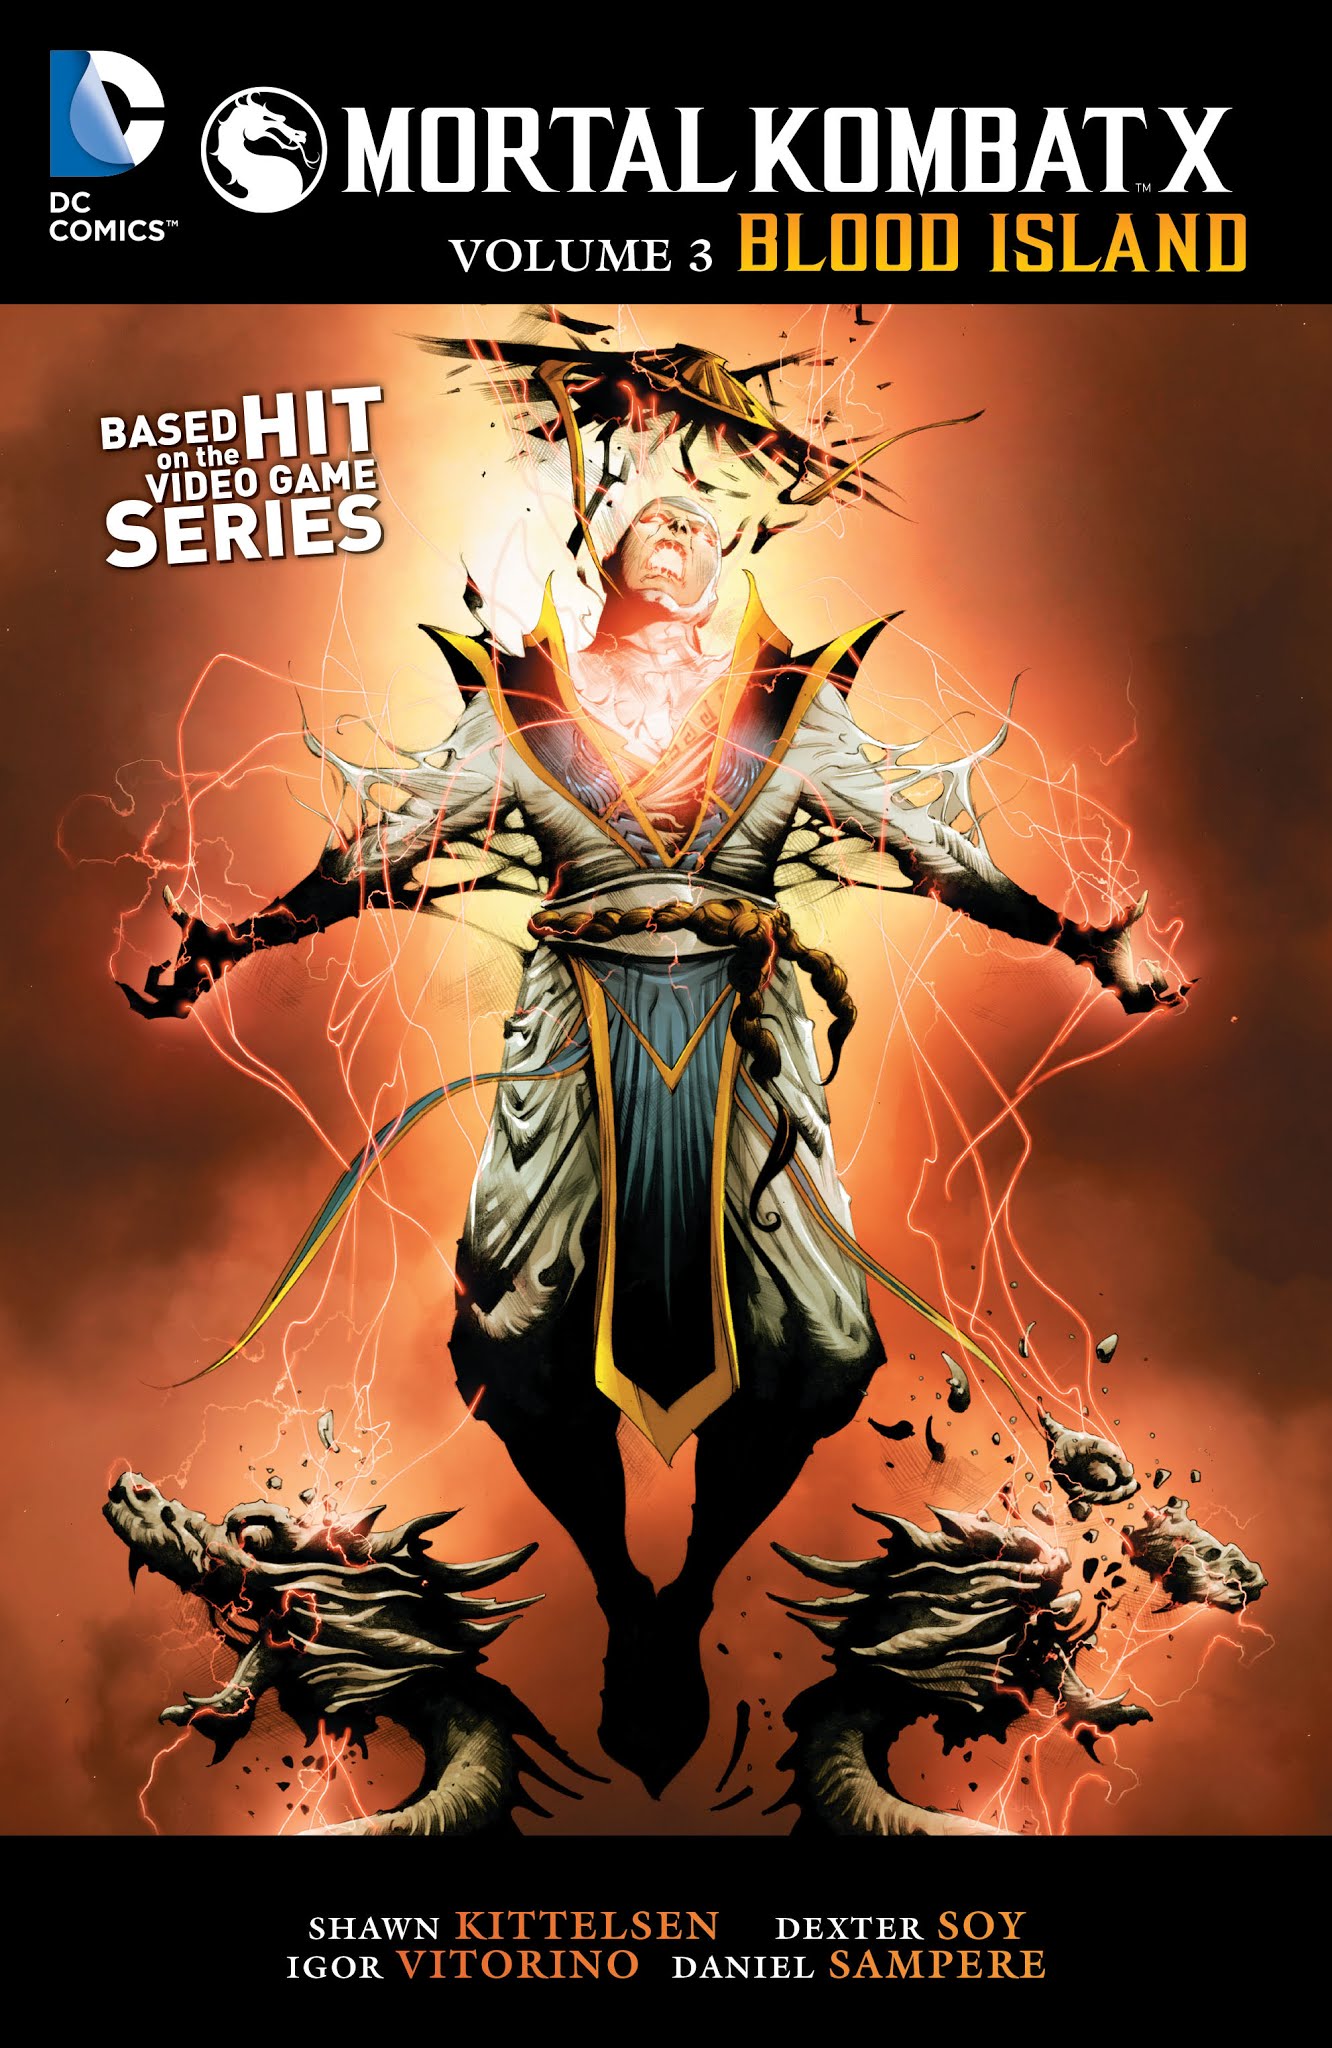 Mortal Kombat X I Tpb 3 | Read Mortal Kombat X I Tpb 3 comic online in high  quality. Read Full Comic online for free - Read comics online in high  quality .| READ COMIC ONLINE